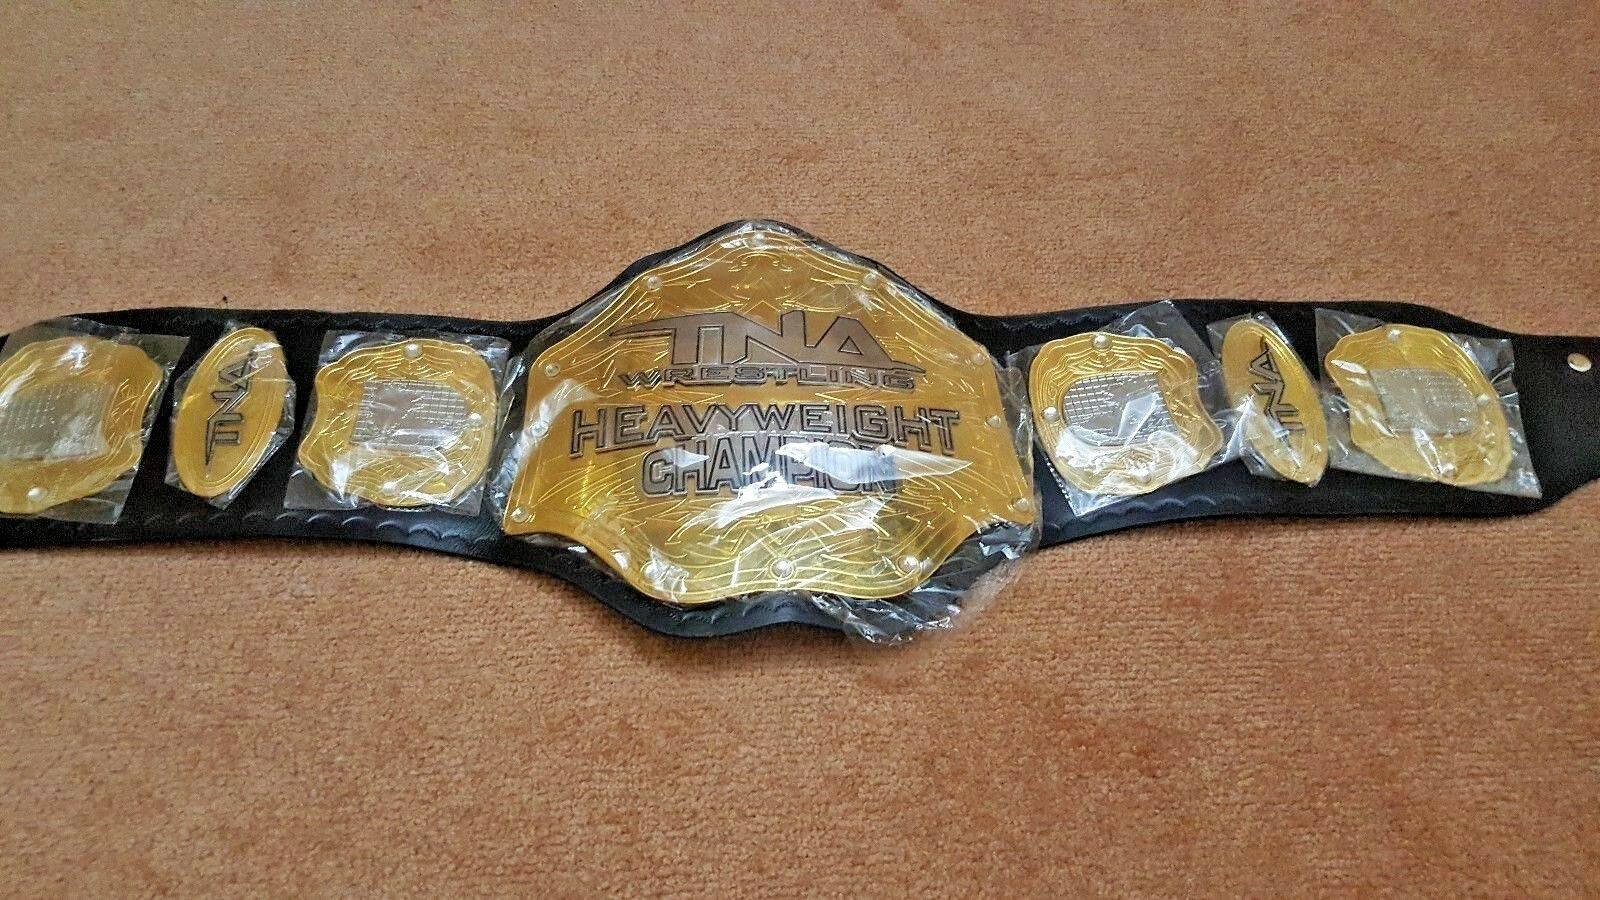 TNA HEAVYWEIGHT Brass Championship Title Belt - Zees Belts